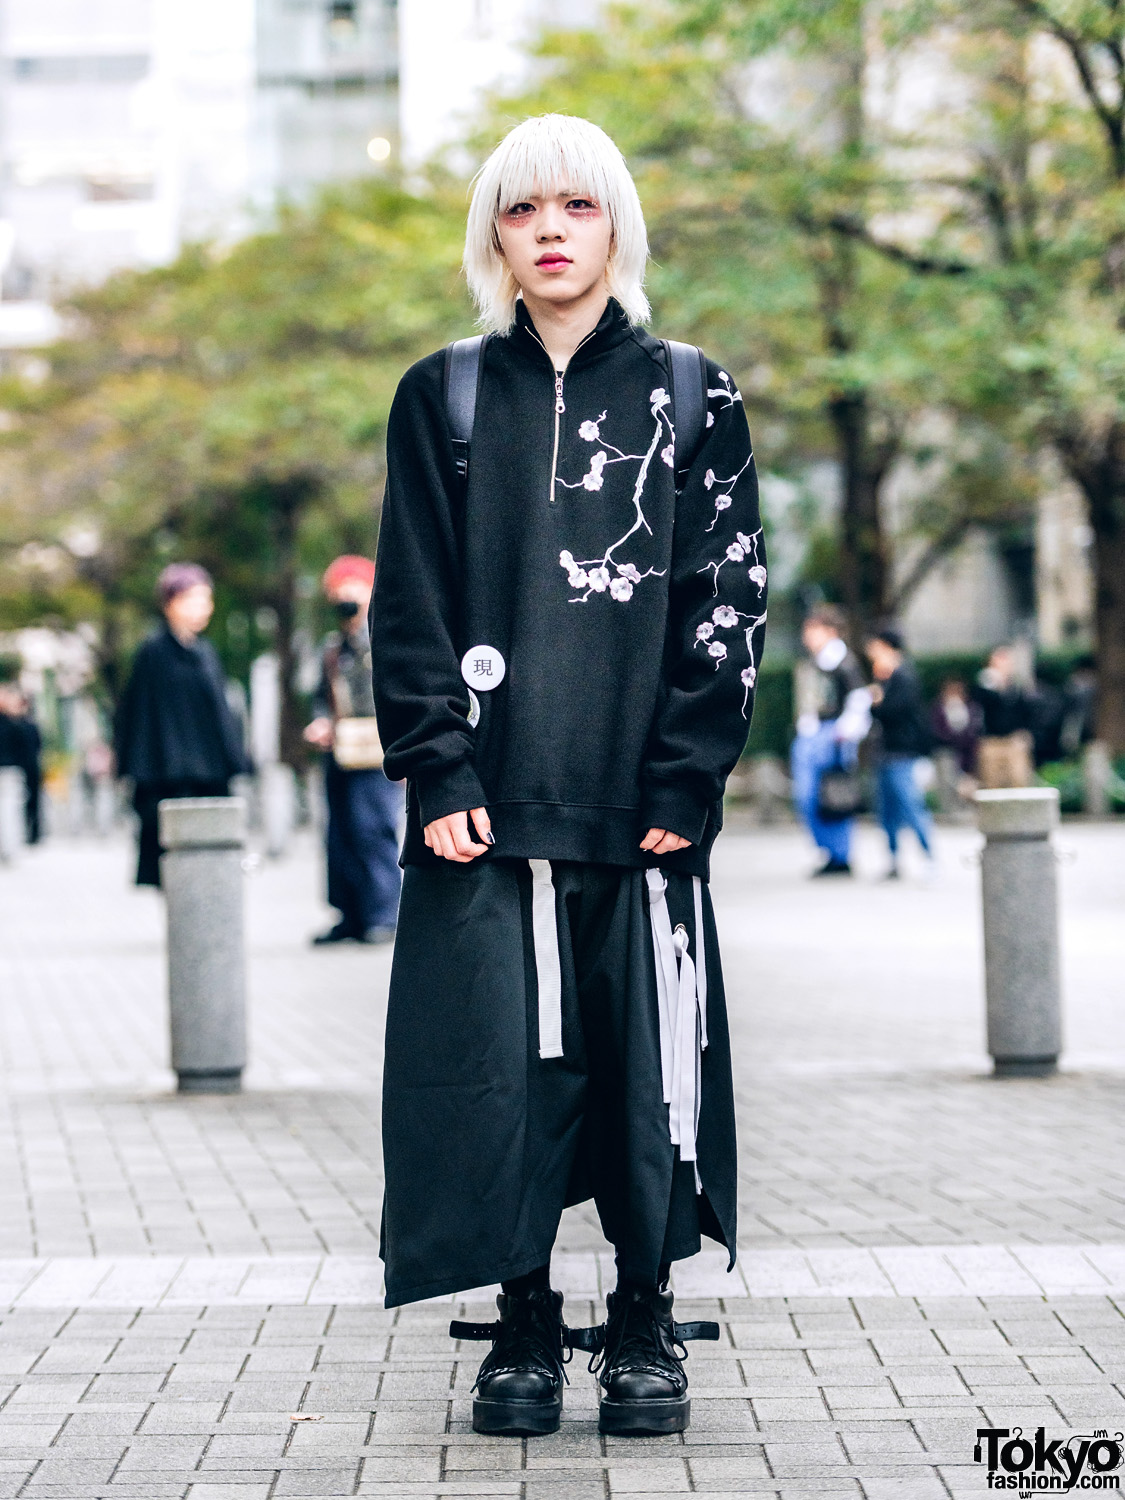 Shinjuku Japanese Street Fashion Photos – Tokyo Fashion